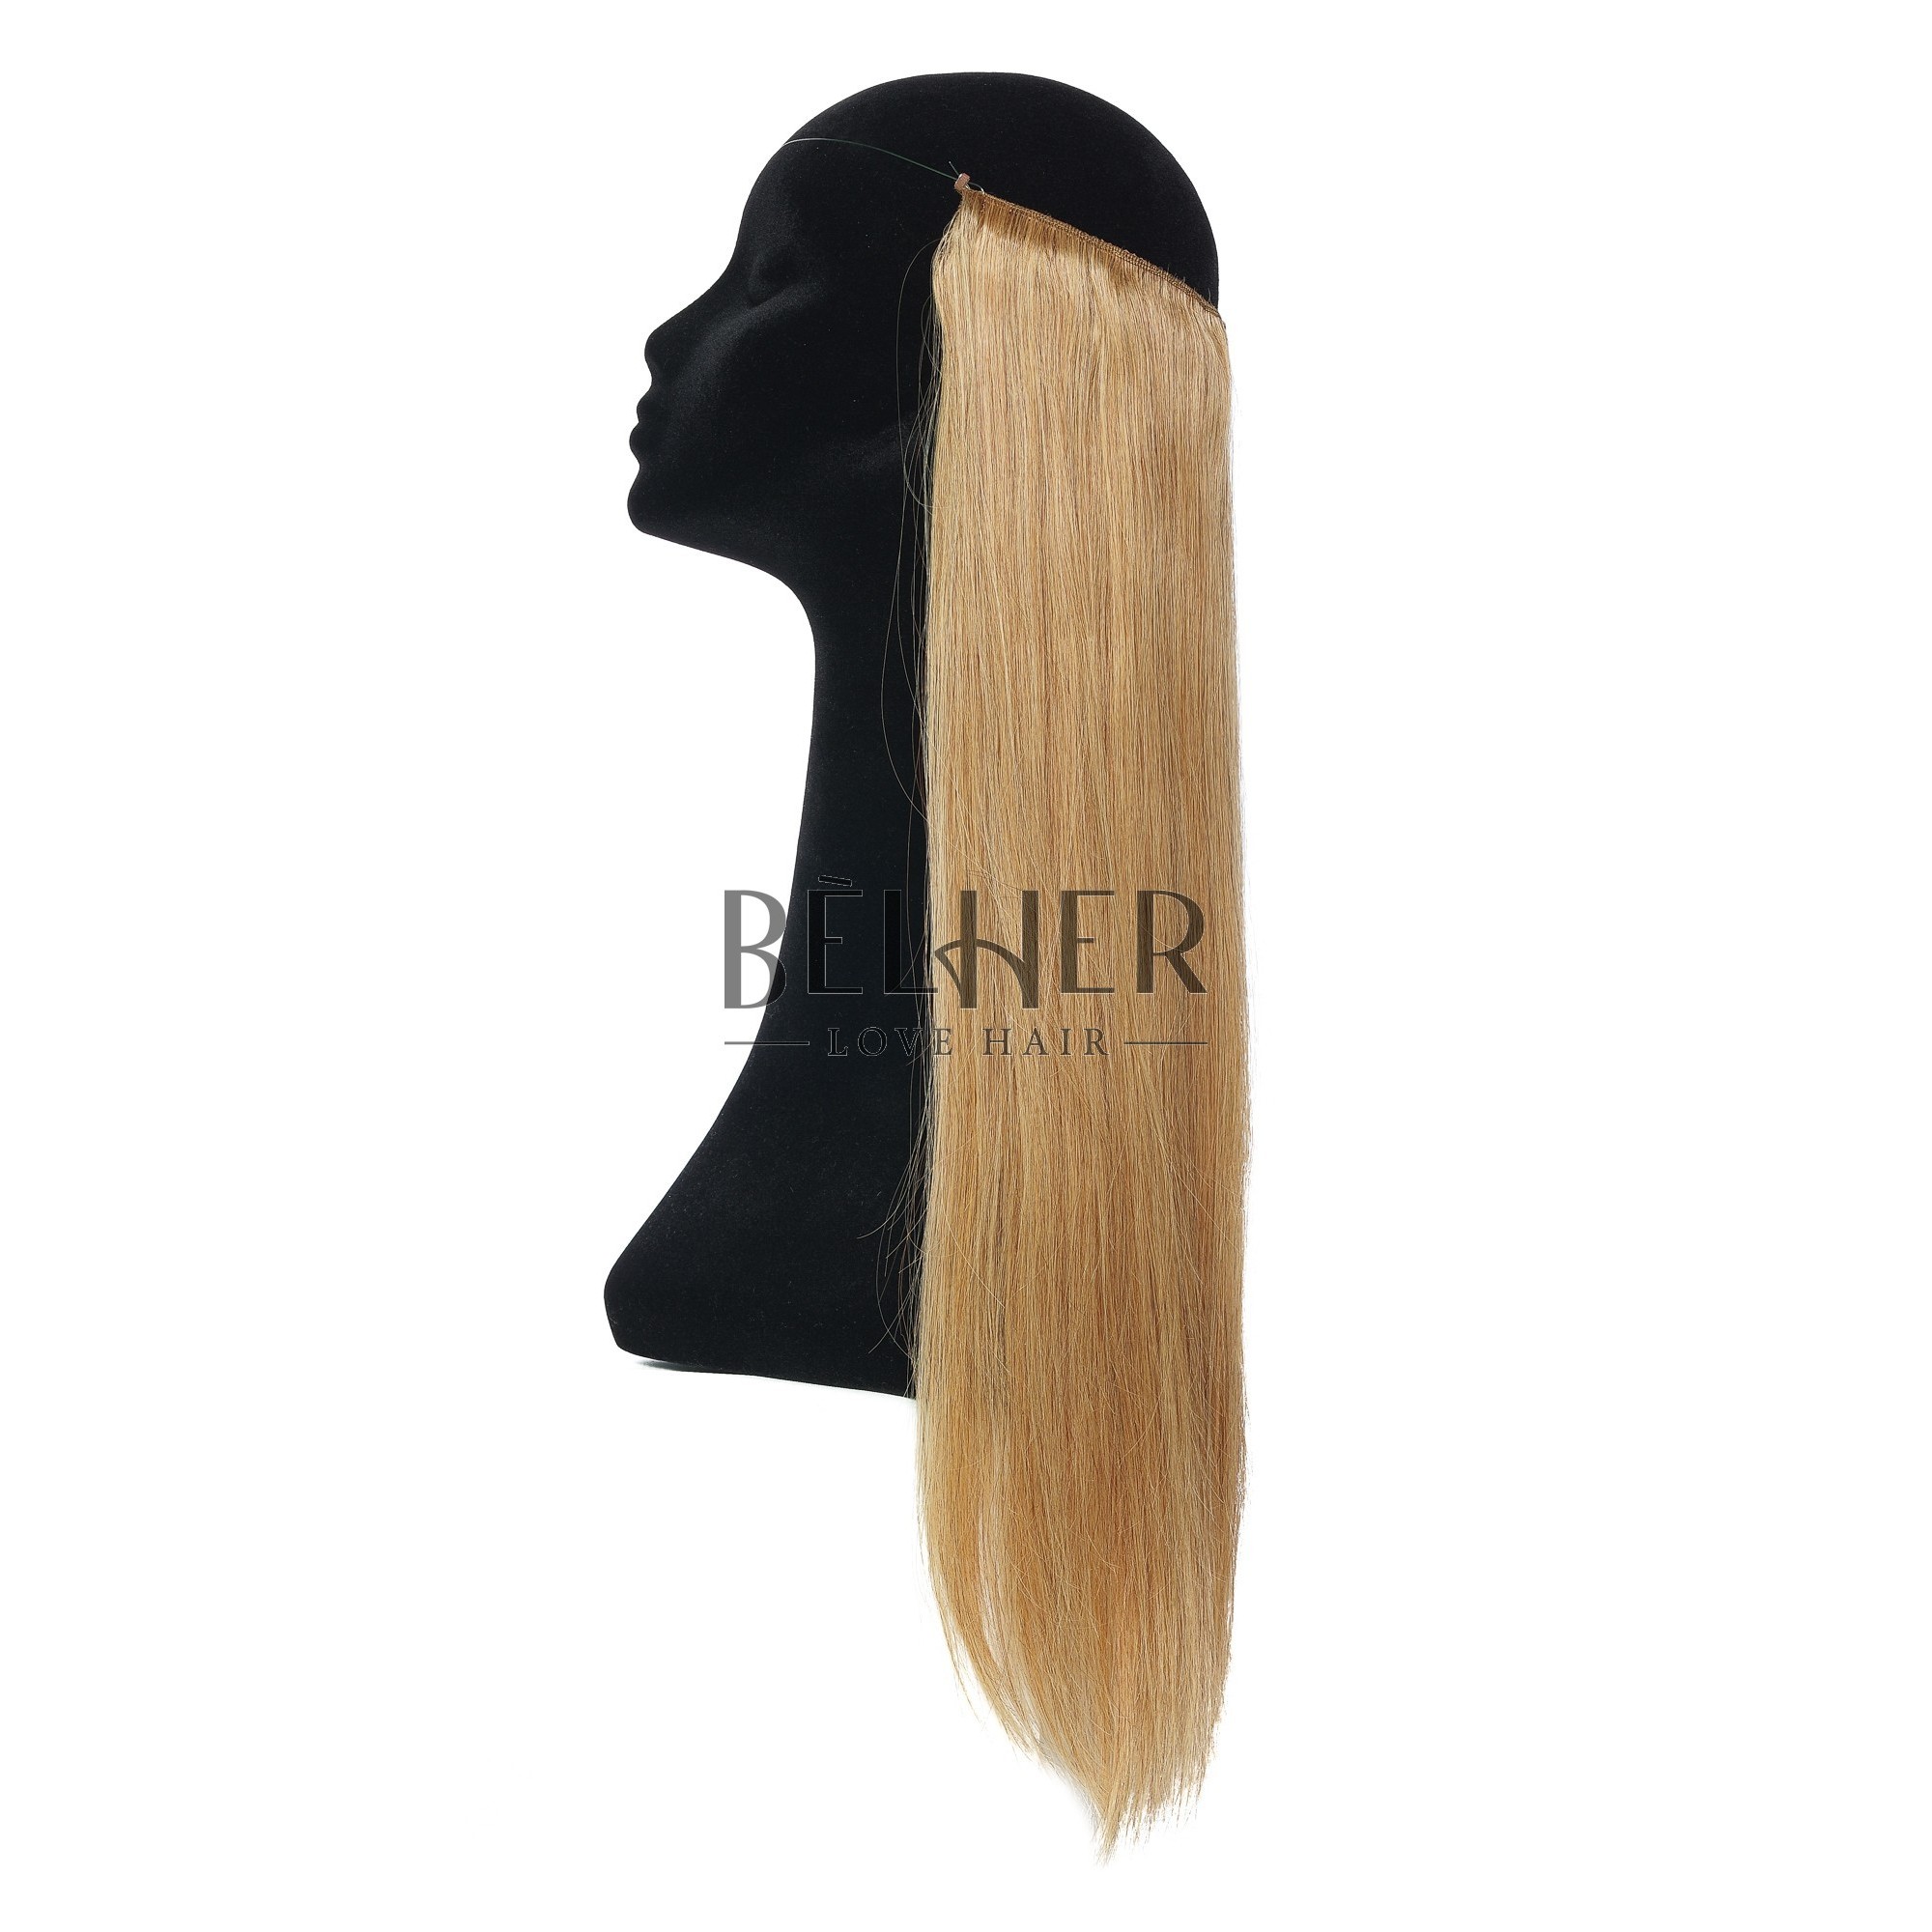 Extensii Flip-In Premium Blond Miere imagine produs